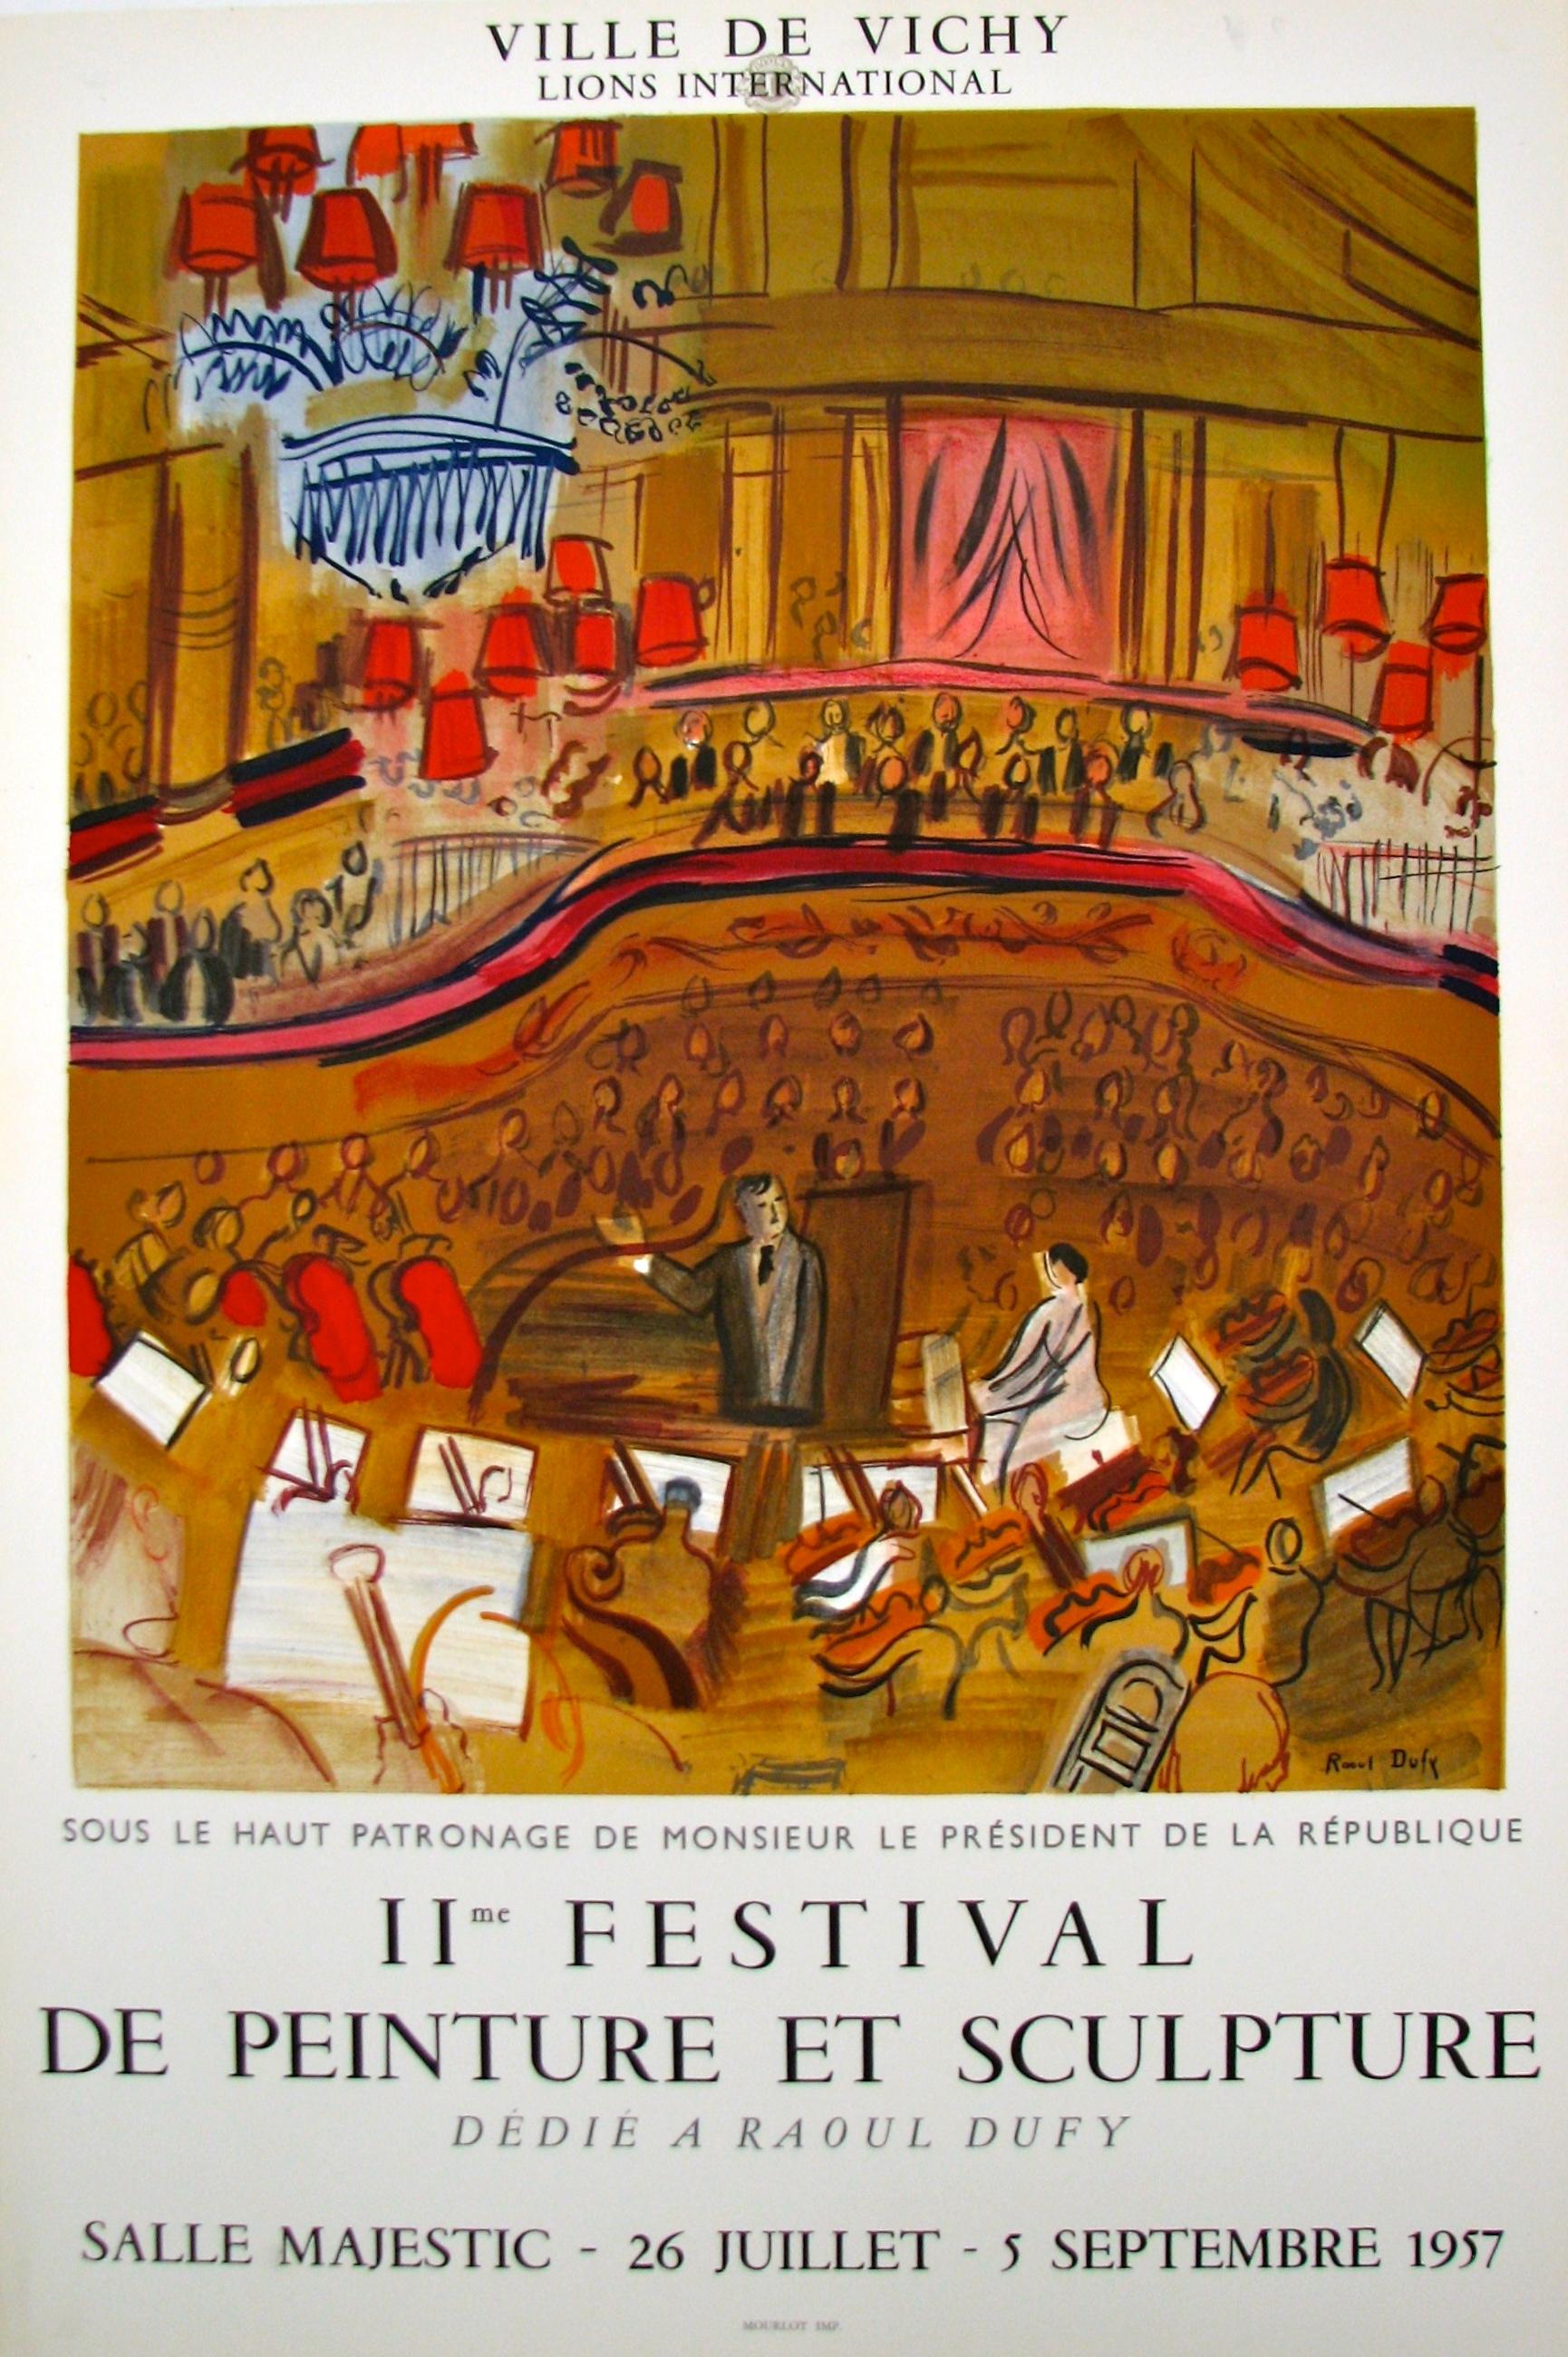 Le Grand Concert-II e Festival de Peinture et Sculpture (after) Raoul Dufy, 1957